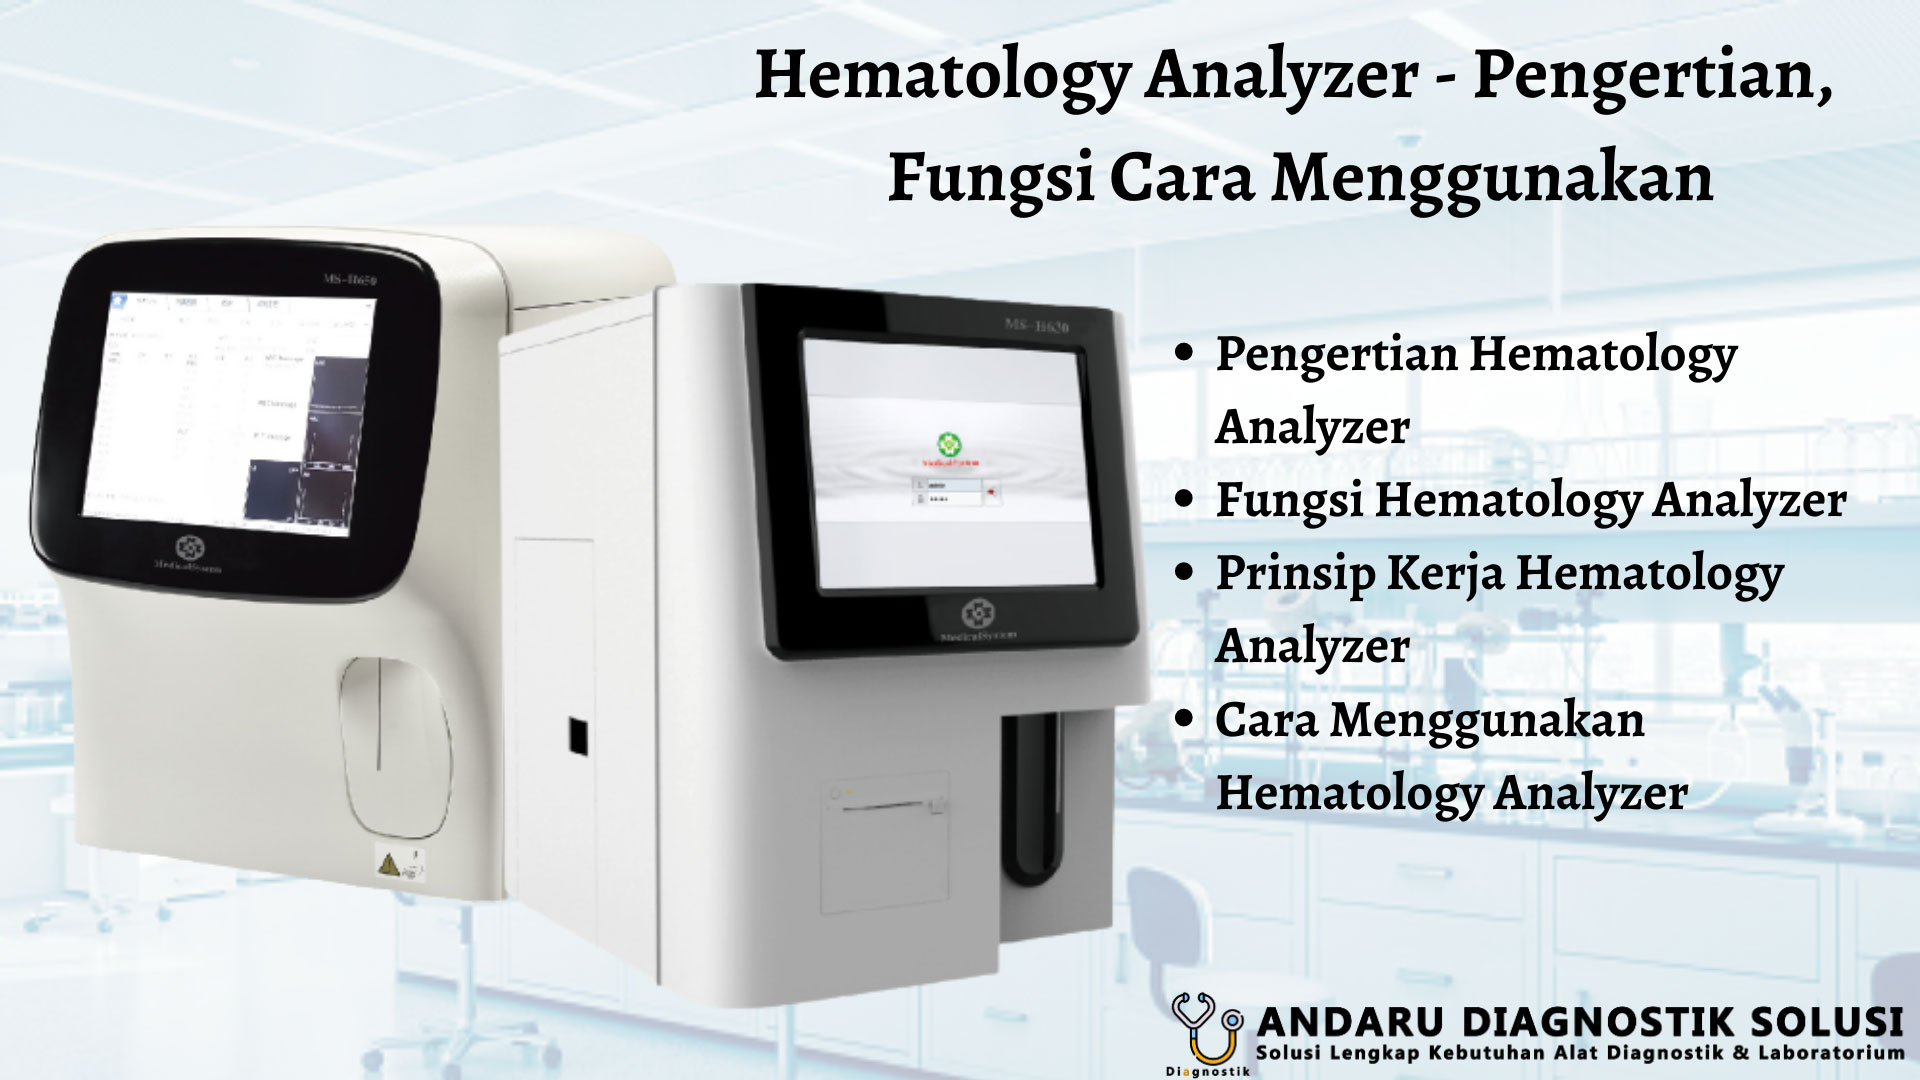 contoh gambar hematology analyzer